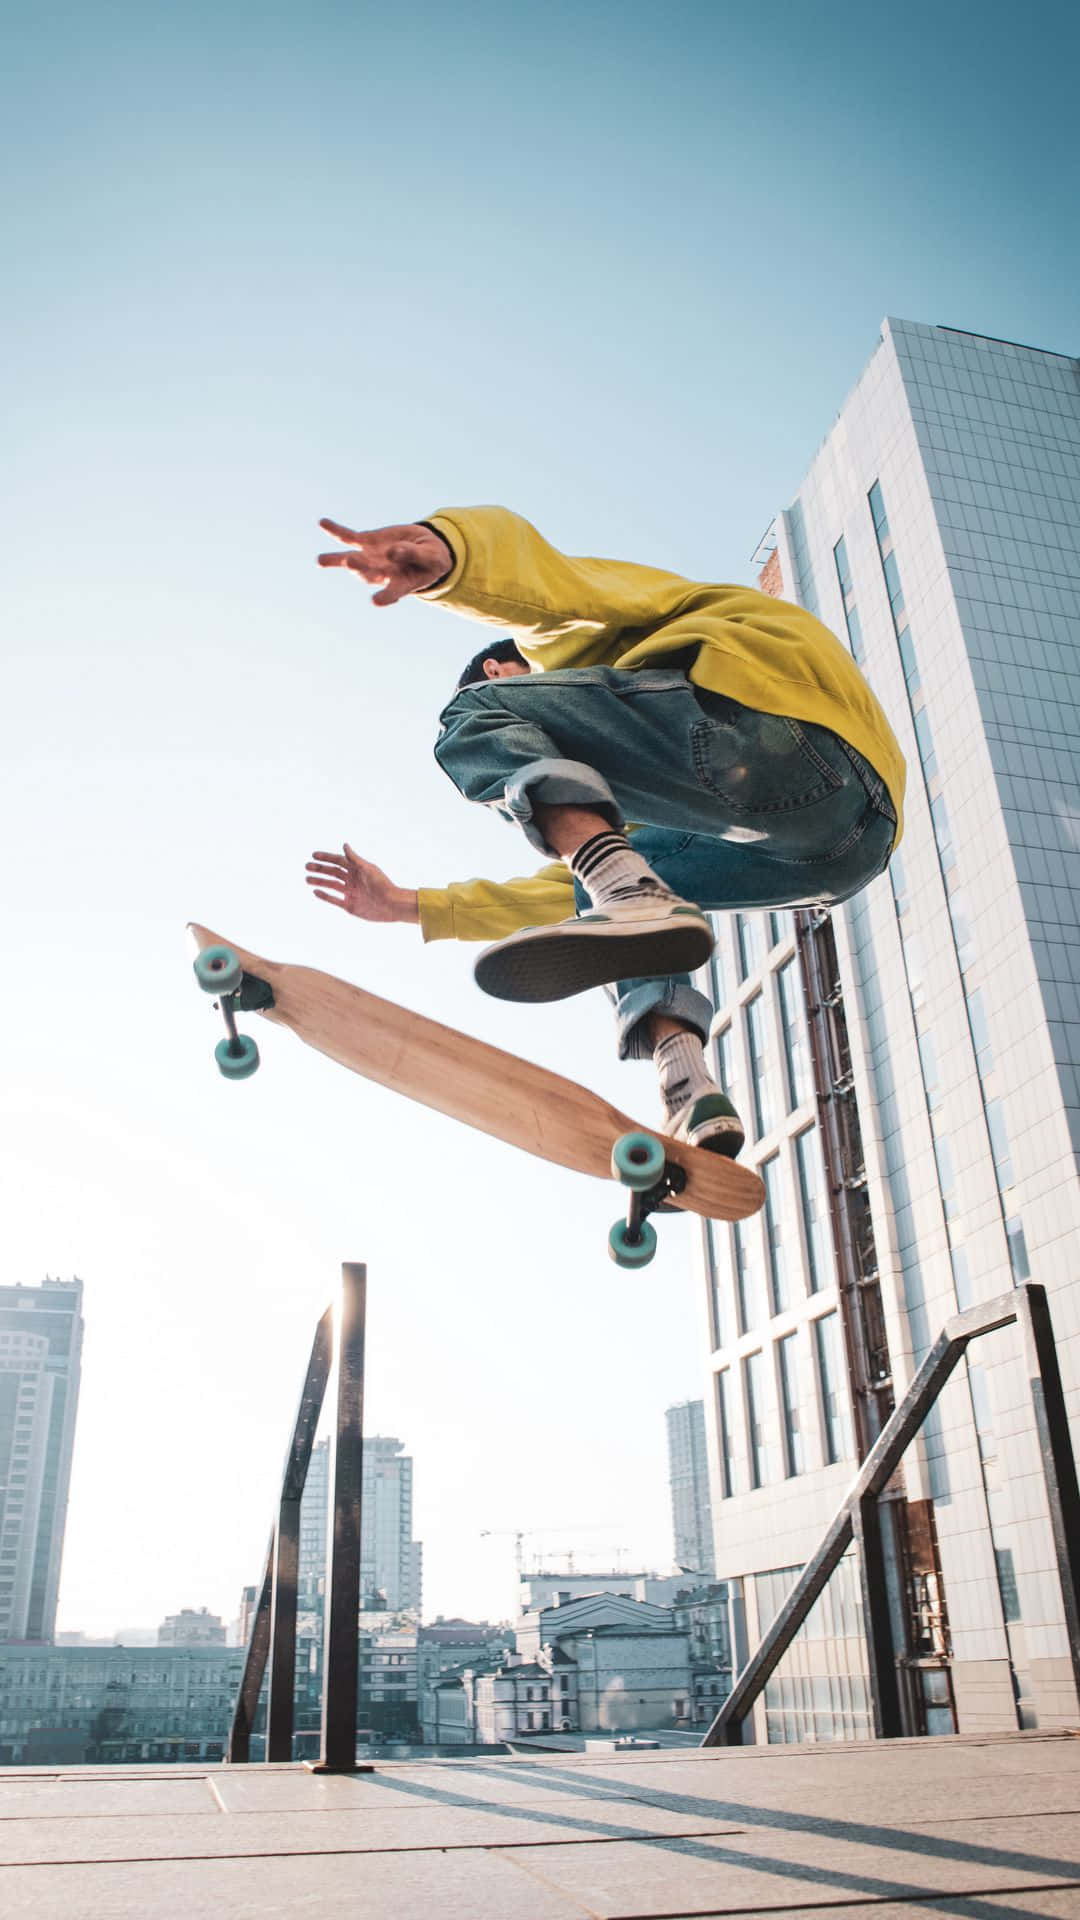 Einskateboarder, Der Tricks In Der Luft Macht. Wallpaper